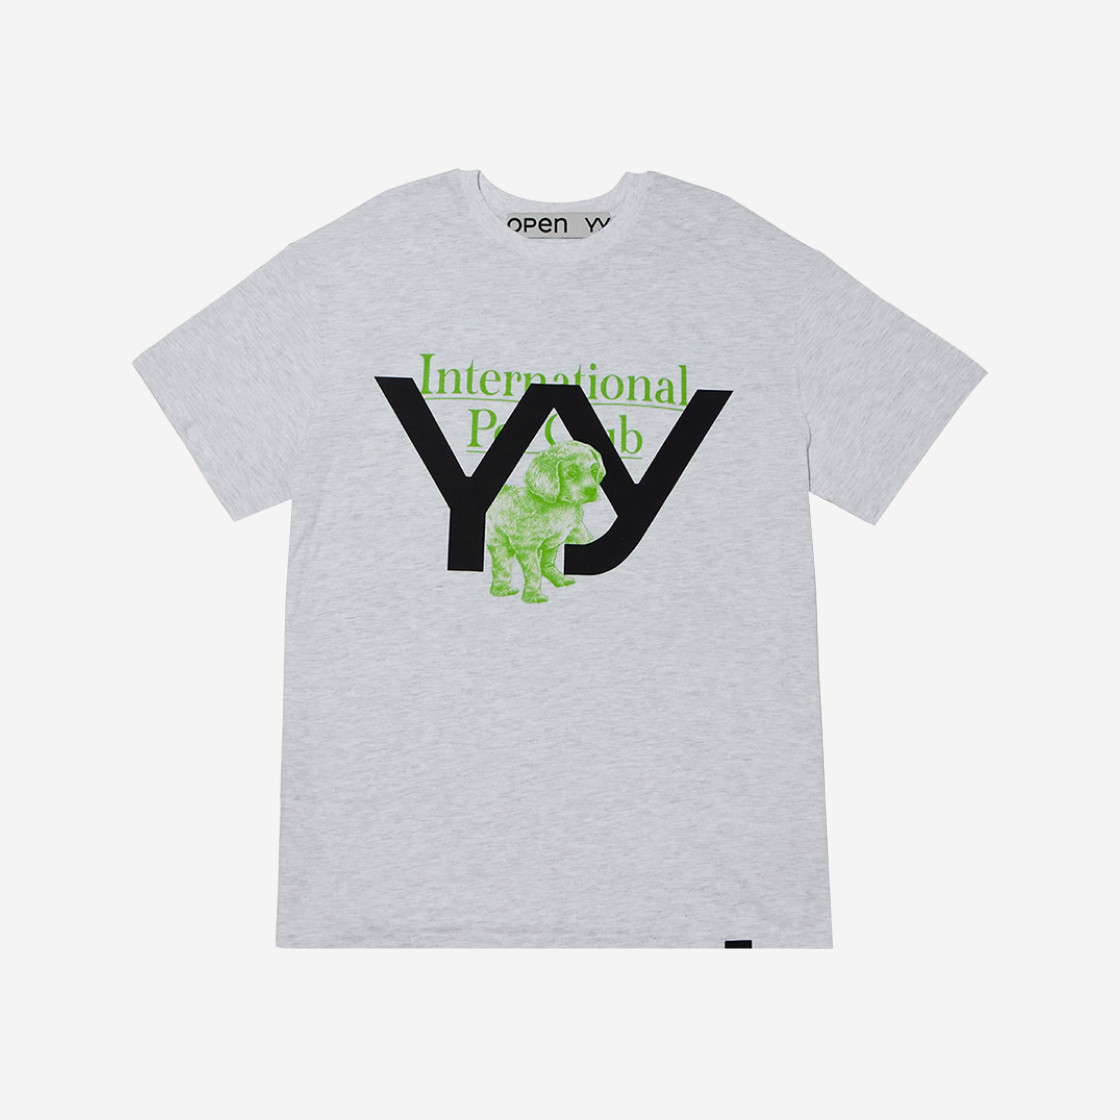 오픈 Yy 아카이브 펫 클럽 티셔츠 라이트 그레이 | Open Yy | KREAM